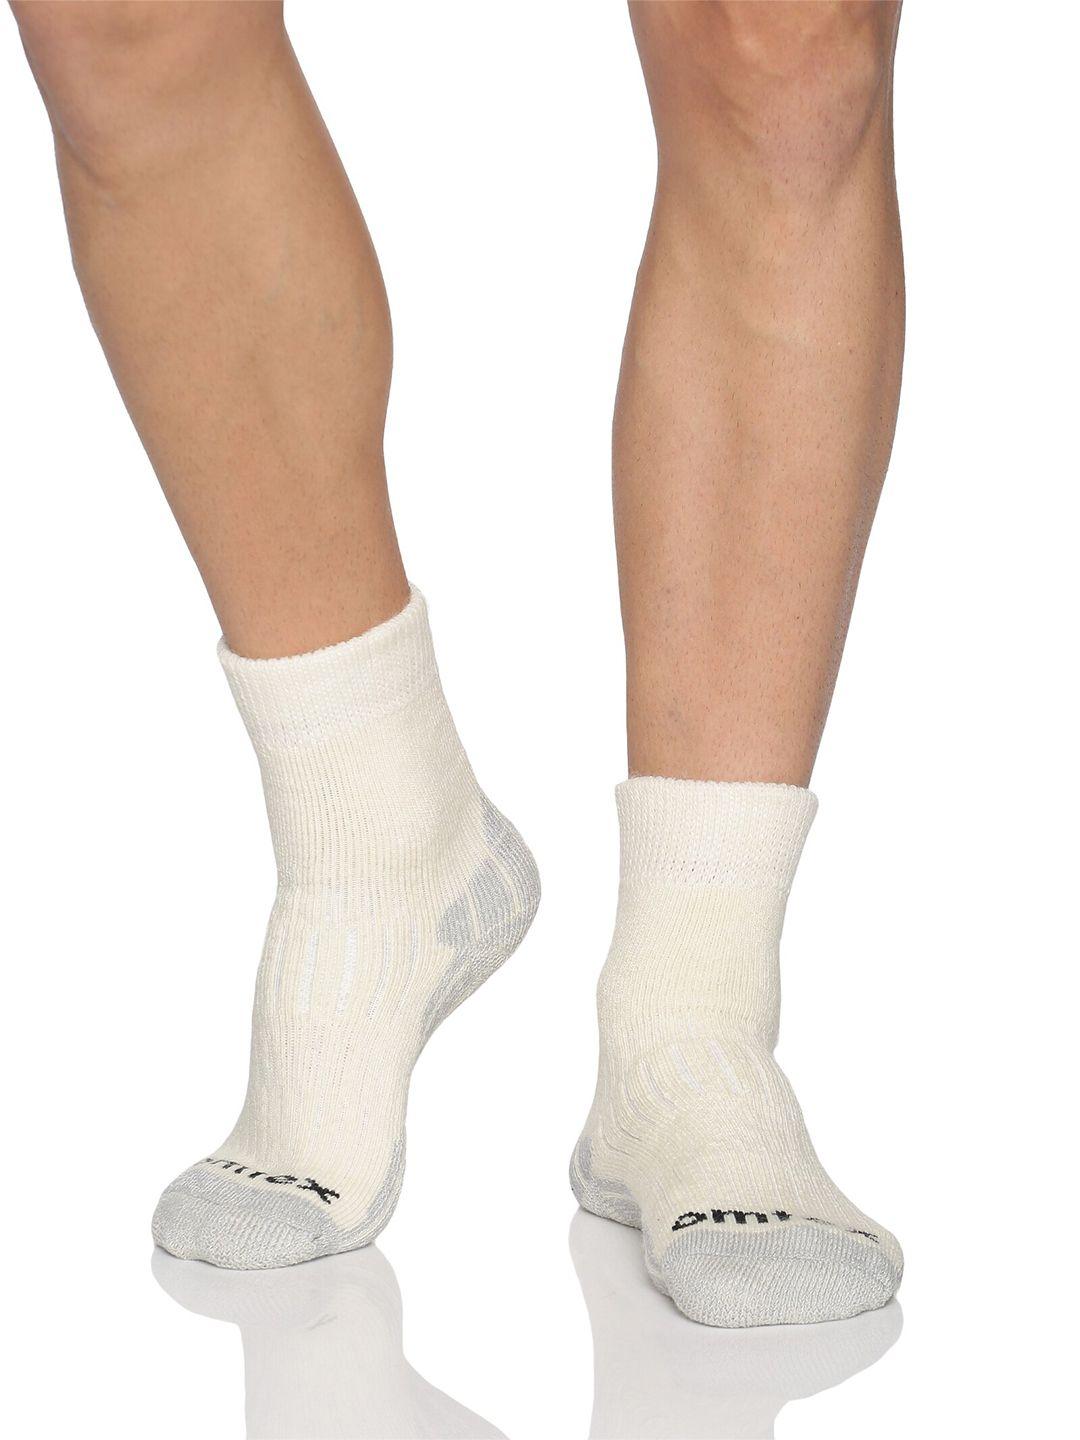 omtex men patterned cotton calf length socks